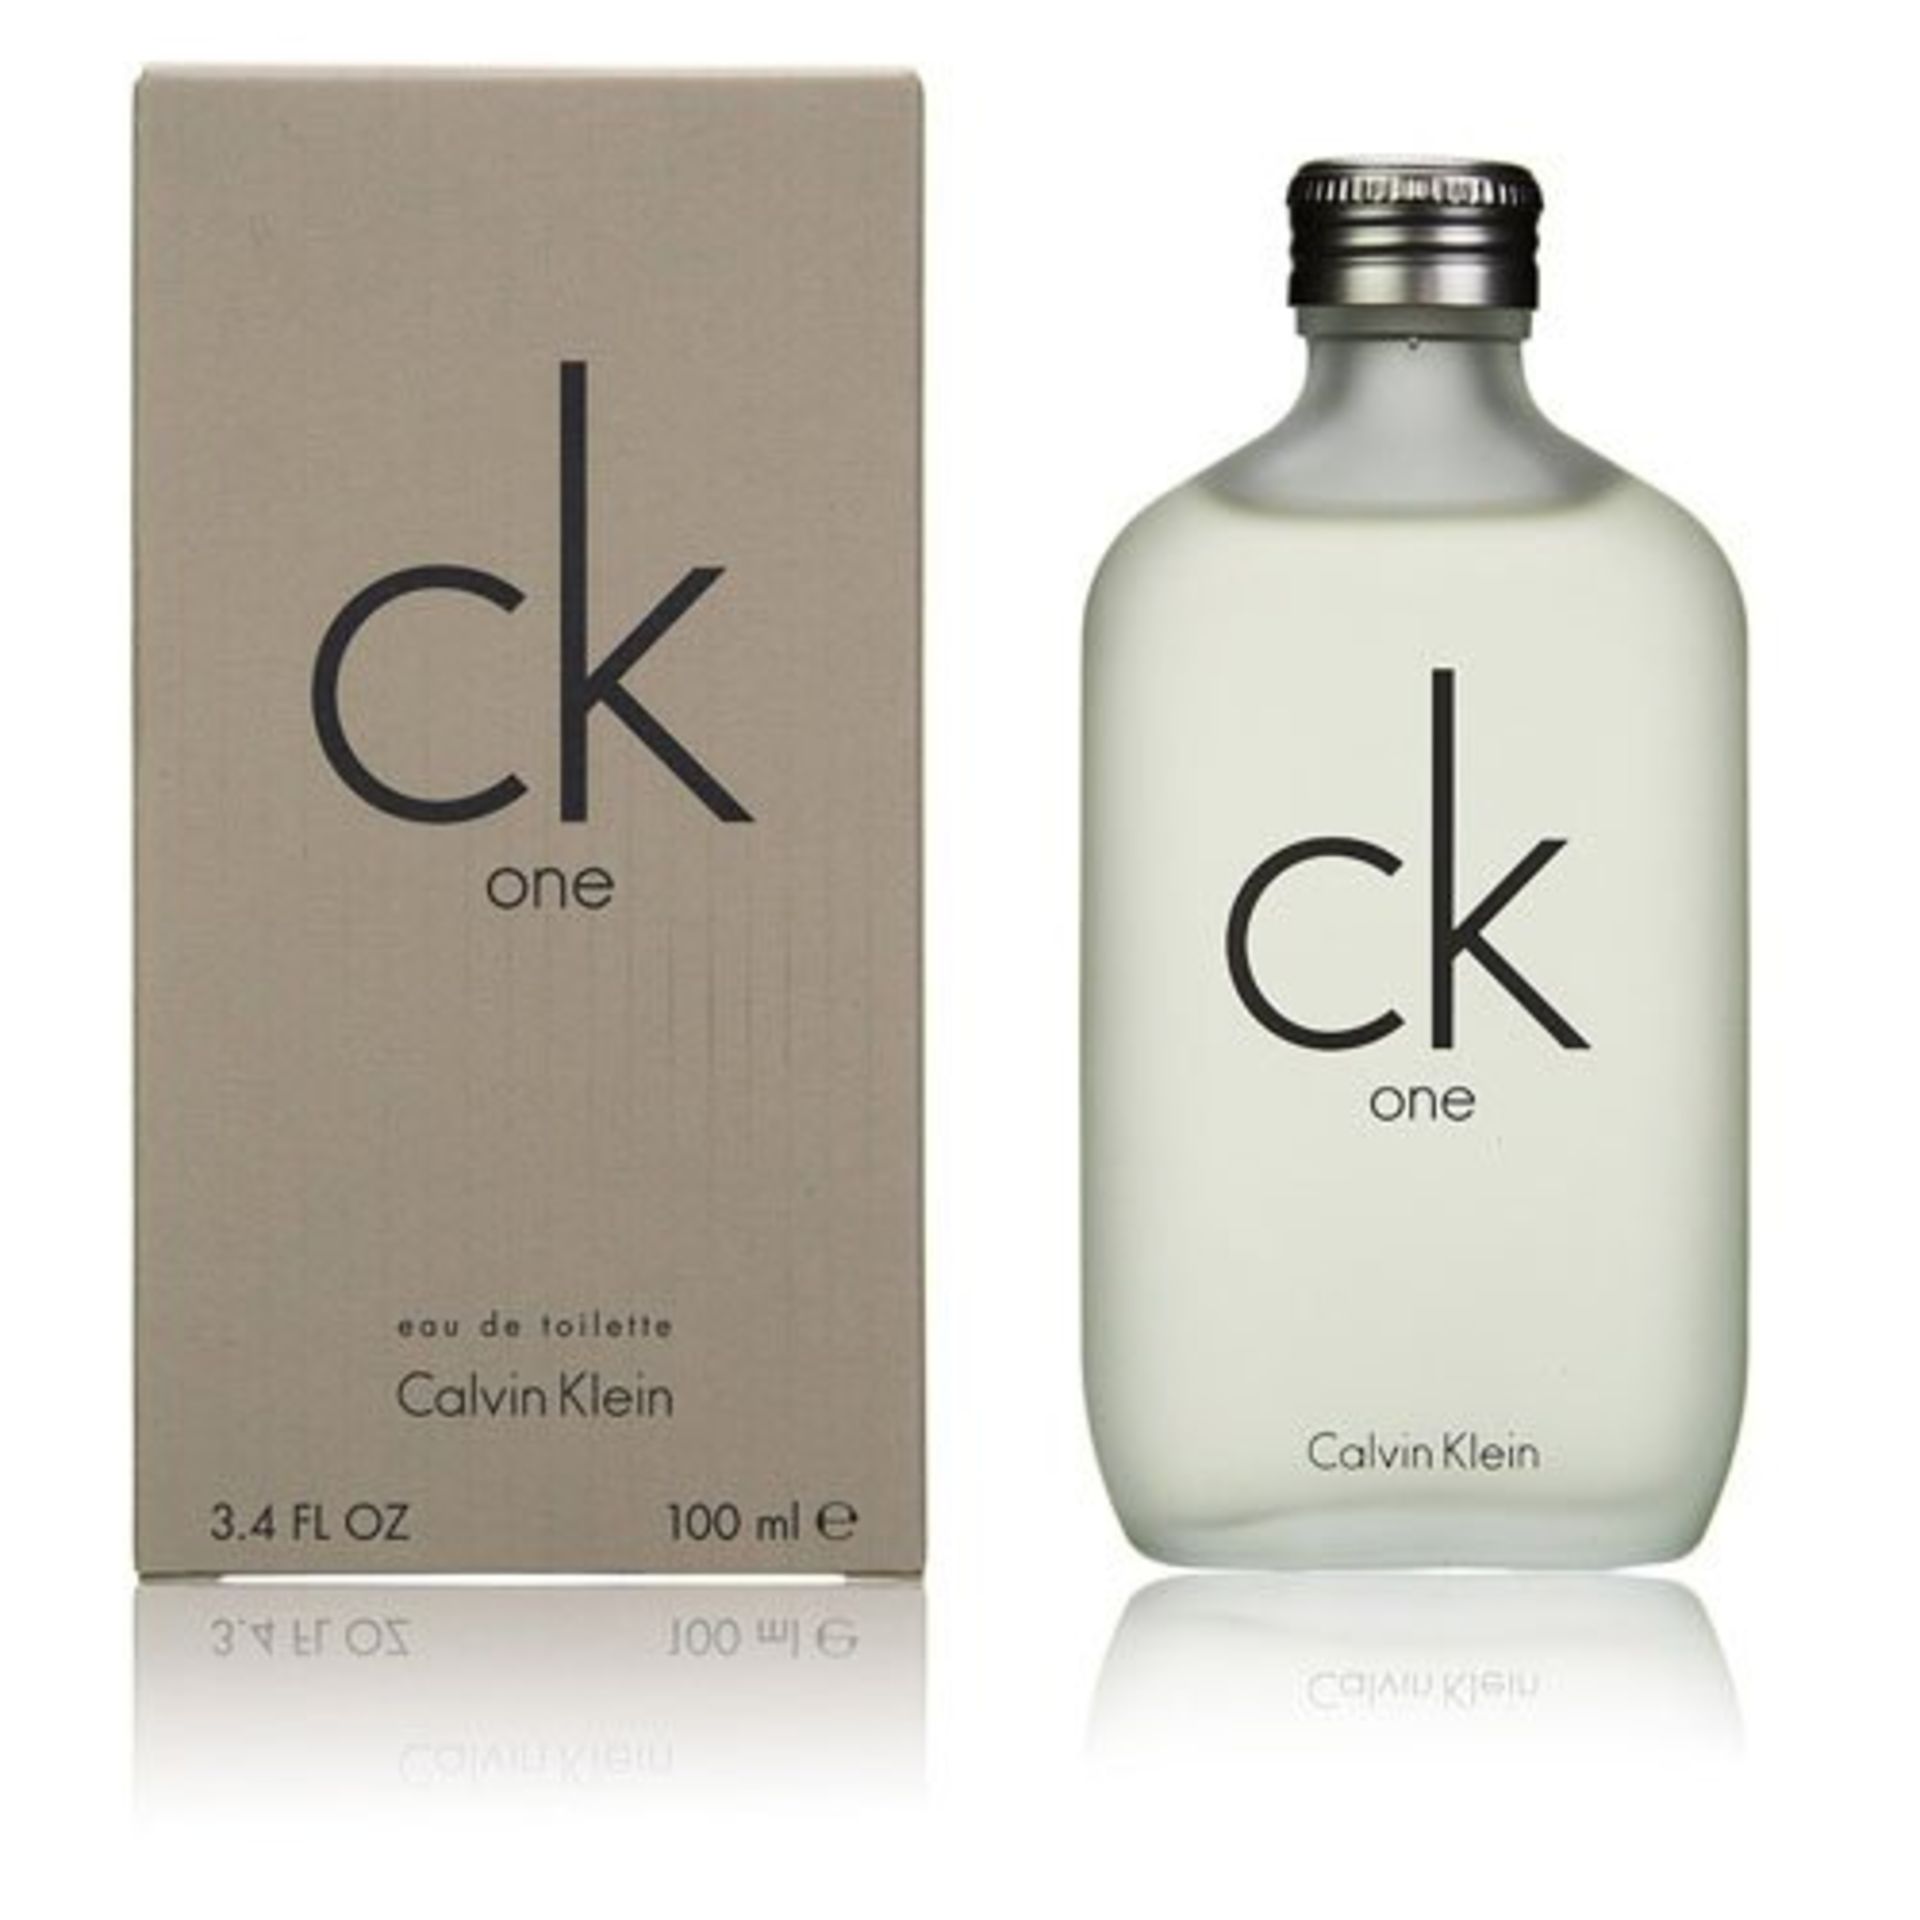 + VAT Brand New Calvin Klein CK One 100ml EDT Spray